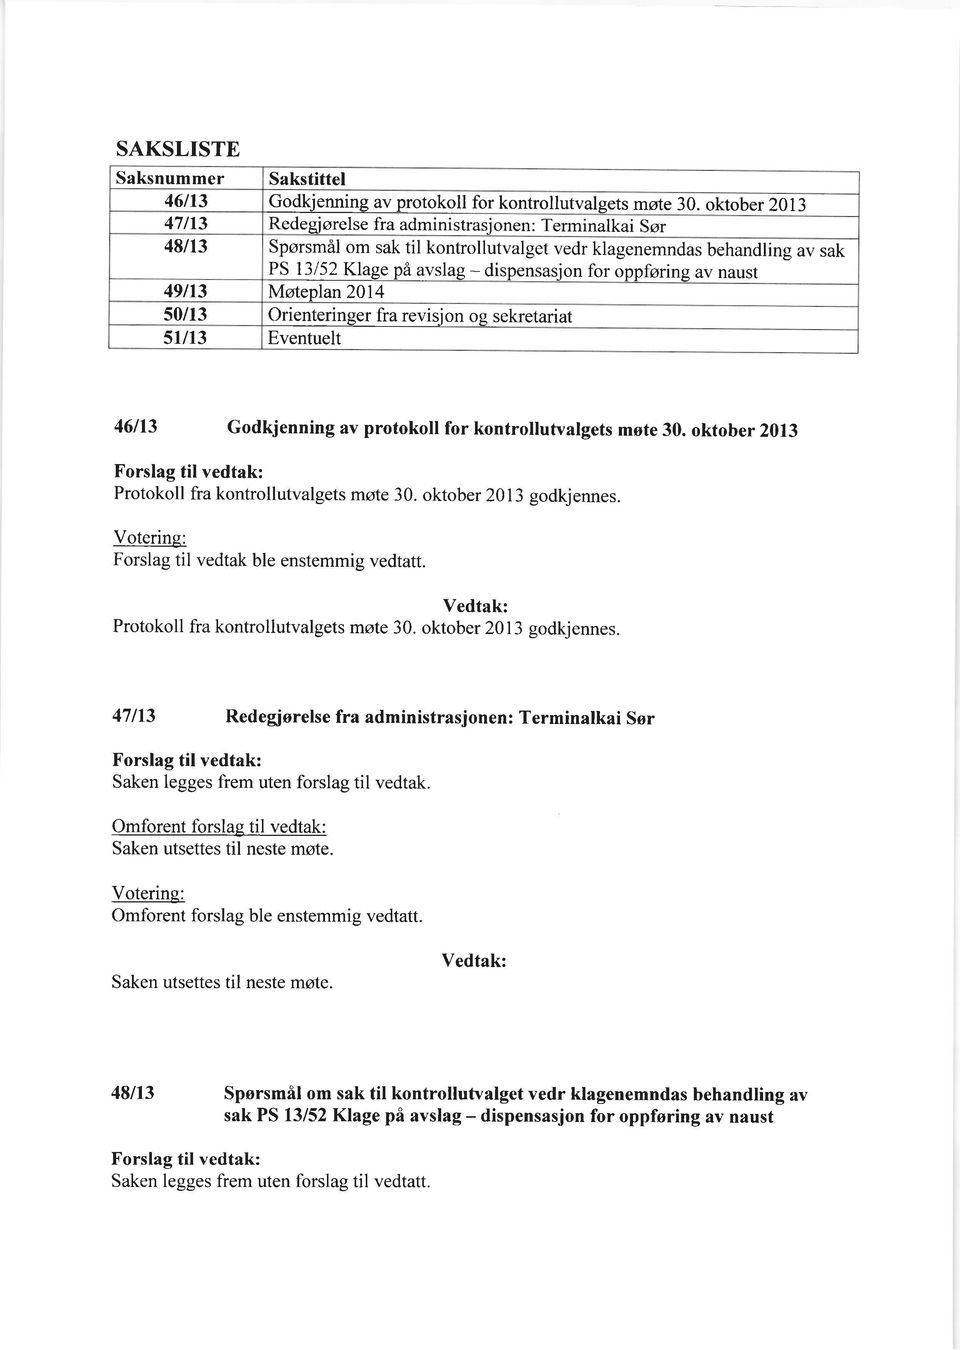 Vedtak: Protokoll fra kontrollutvalgets mote 30. oktober 2013 godkjennes.